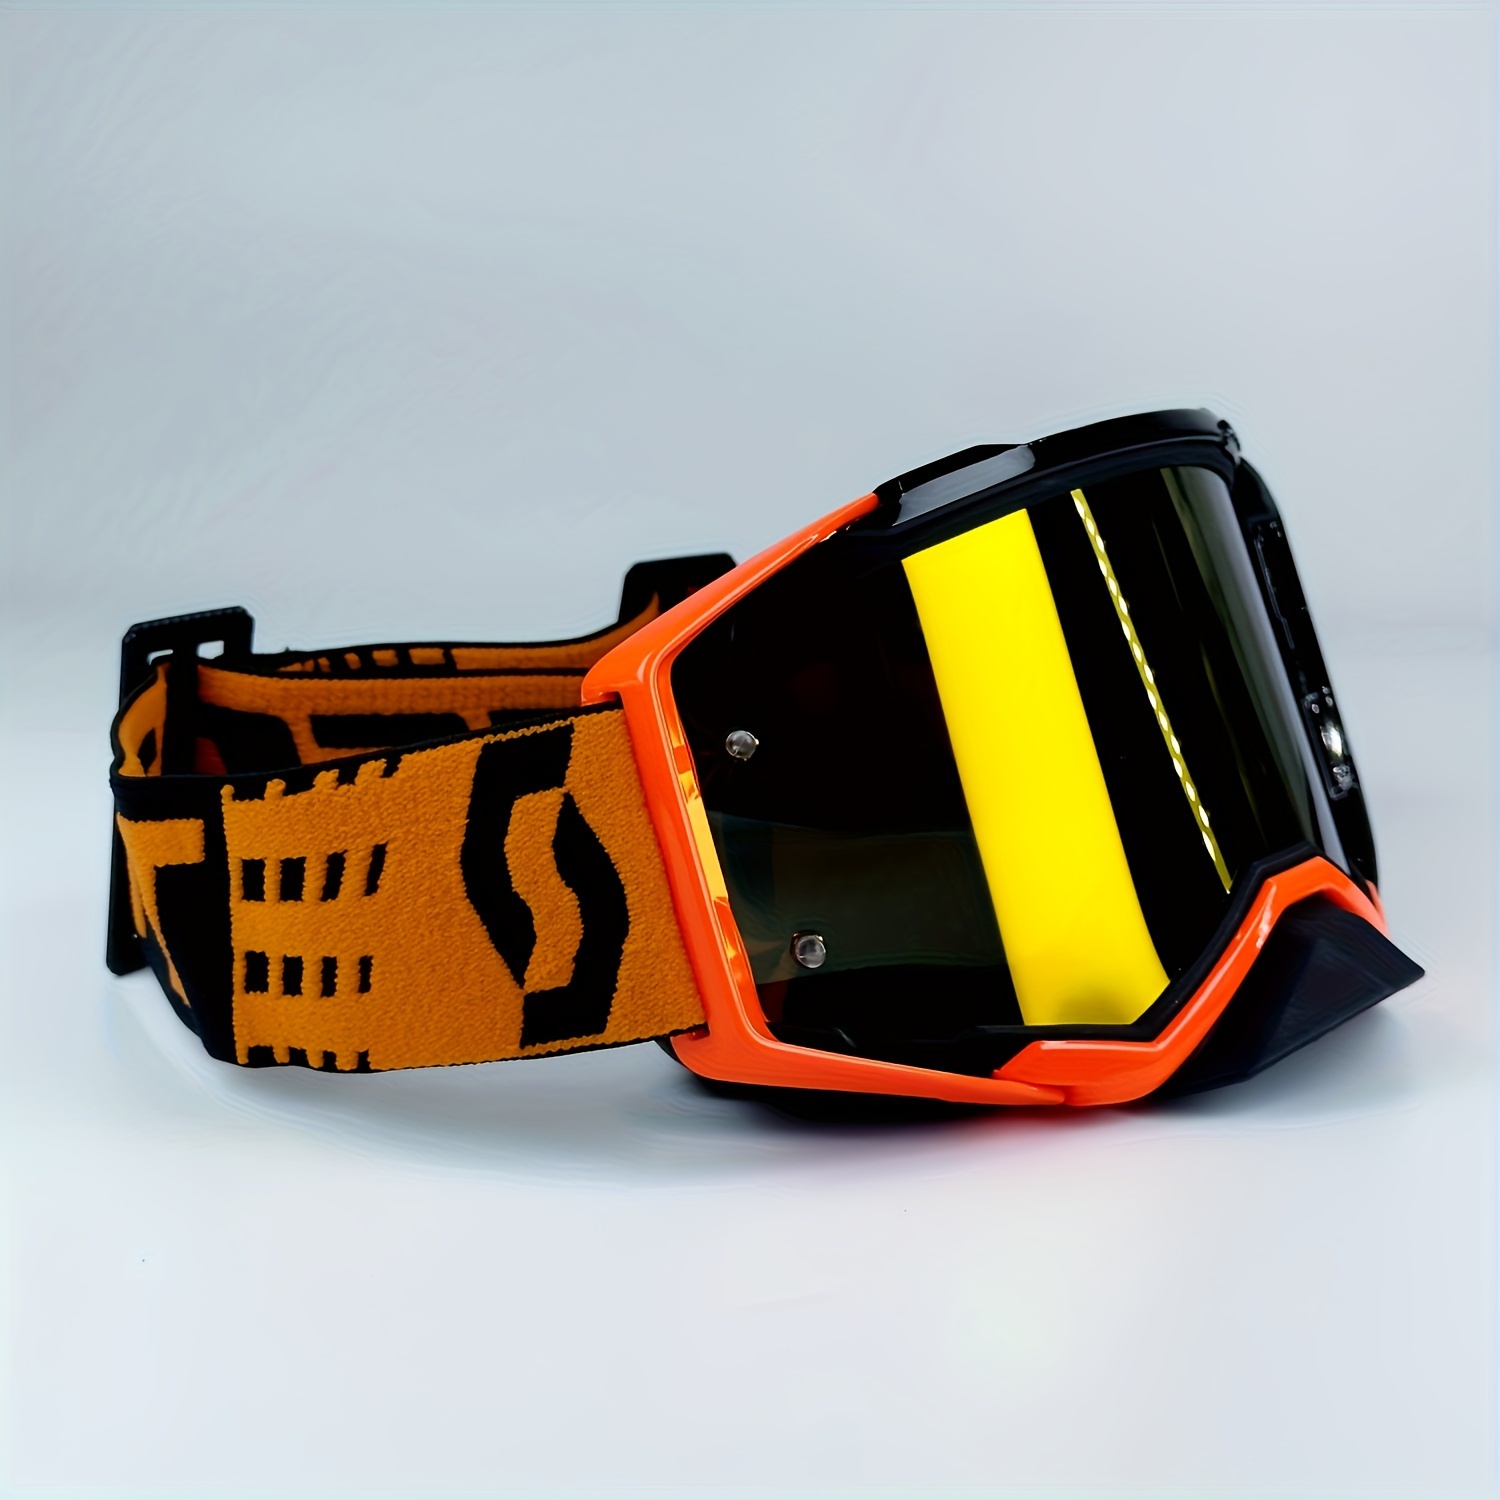 MX Goggles, gafas de motocross para adultos con protección contra el viento  y el polvo y los rayos UV